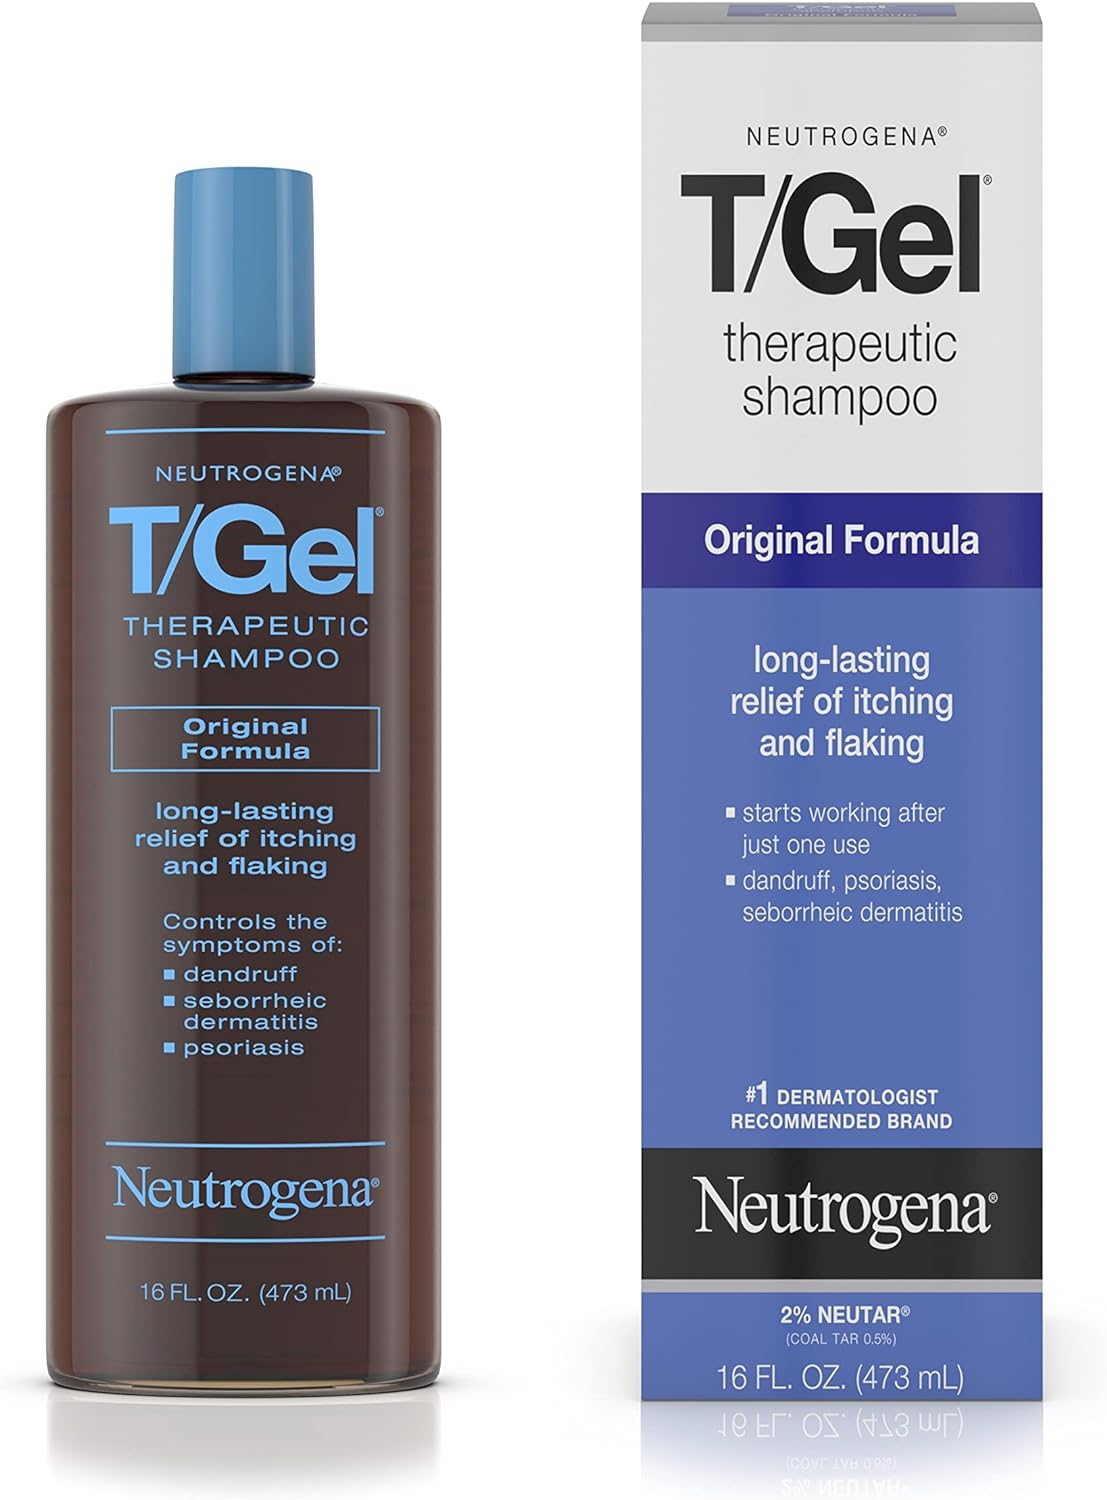 t gel neutrogena szampon leczniczy